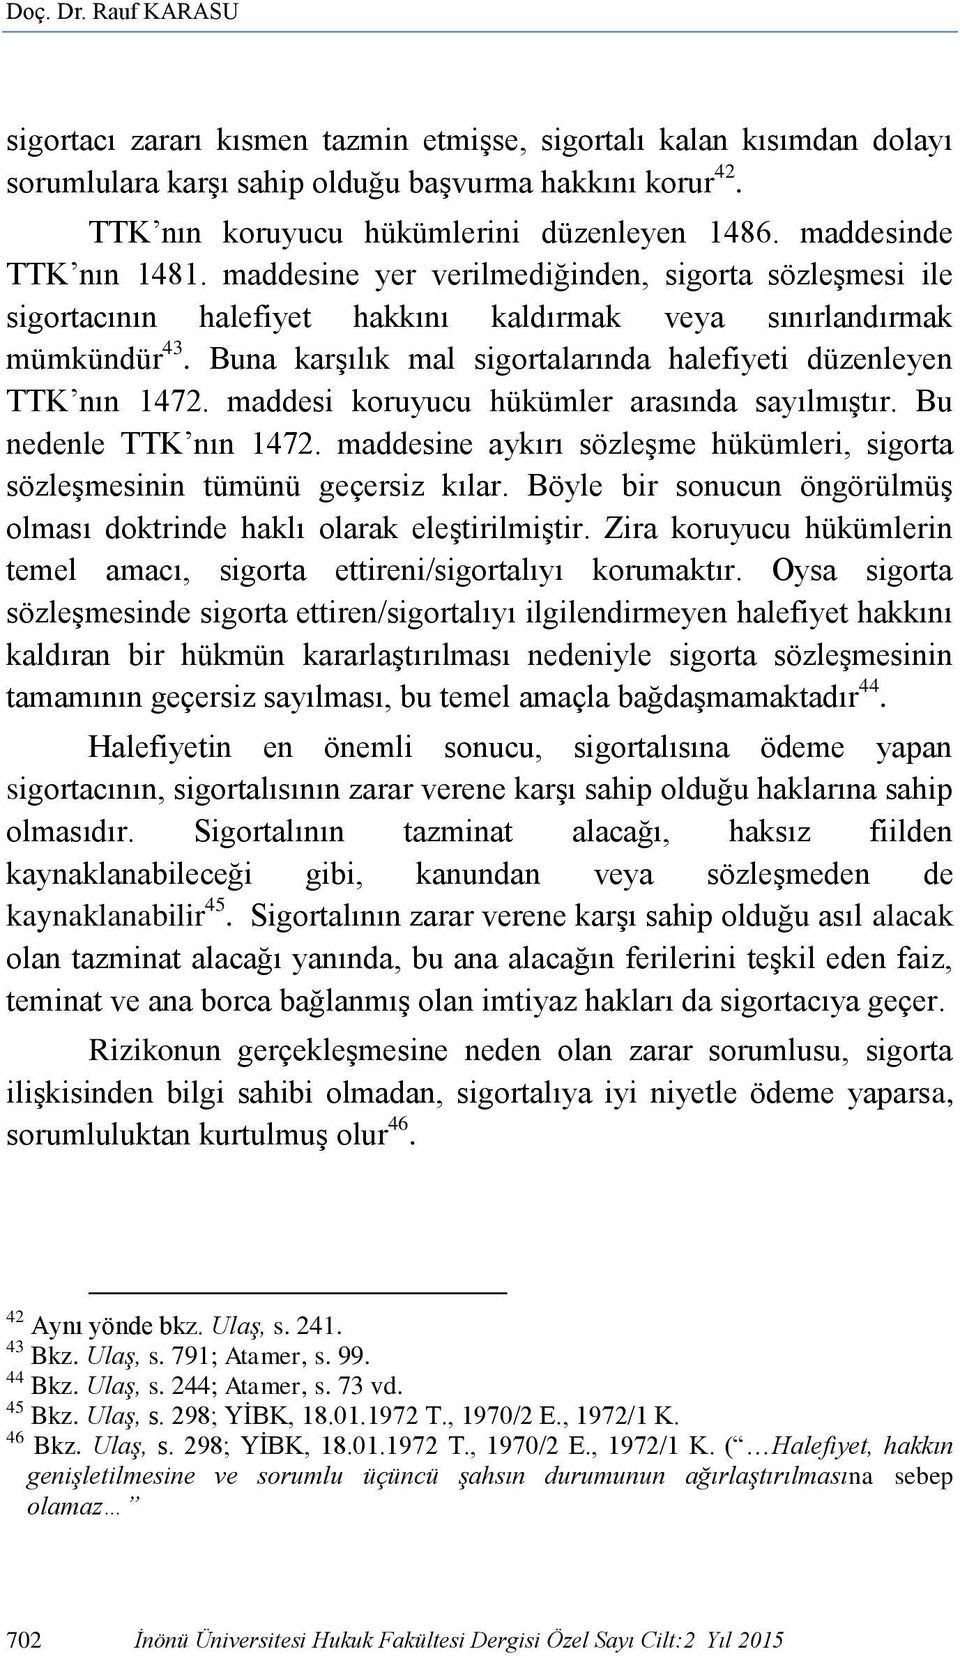 Buna karşılık mal sigortalarında halefiyeti düzenleyen TTK nın 1472. maddesi koruyucu hükümler arasında sayılmıştır. Bu nedenle TTK nın 1472.